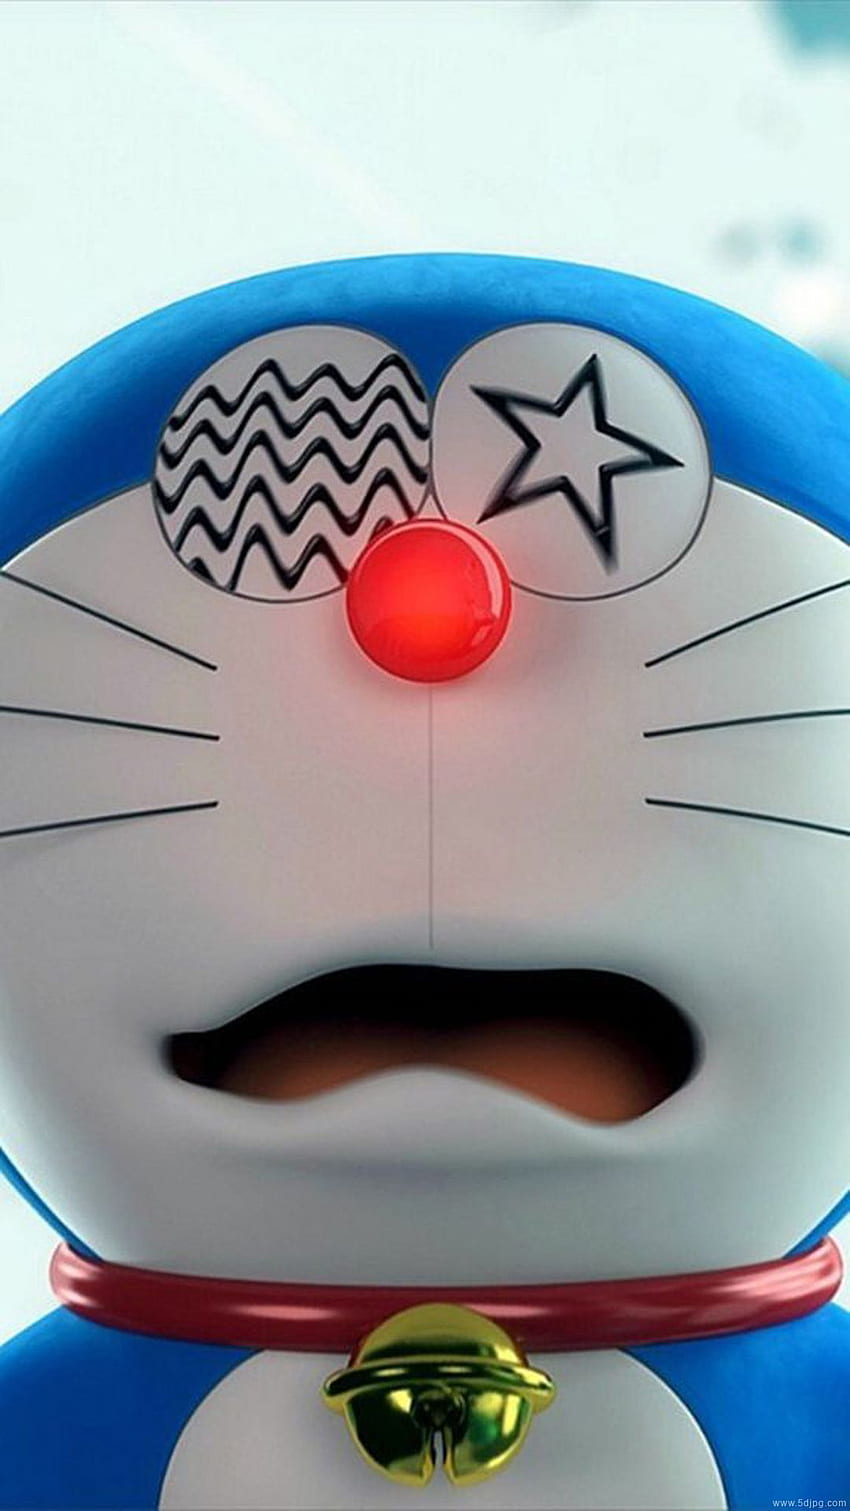 Doraemon Butt Dessert sẽ khiến bạn thèm thuồng với nhiều loại bánh và kem siêu ngon. Những chiếc bánh hình chú mèo máy Doraemon đáng yêu sẽ khiến bữa tiệc của bạn trở nên độc đáo và thú vị hơn.